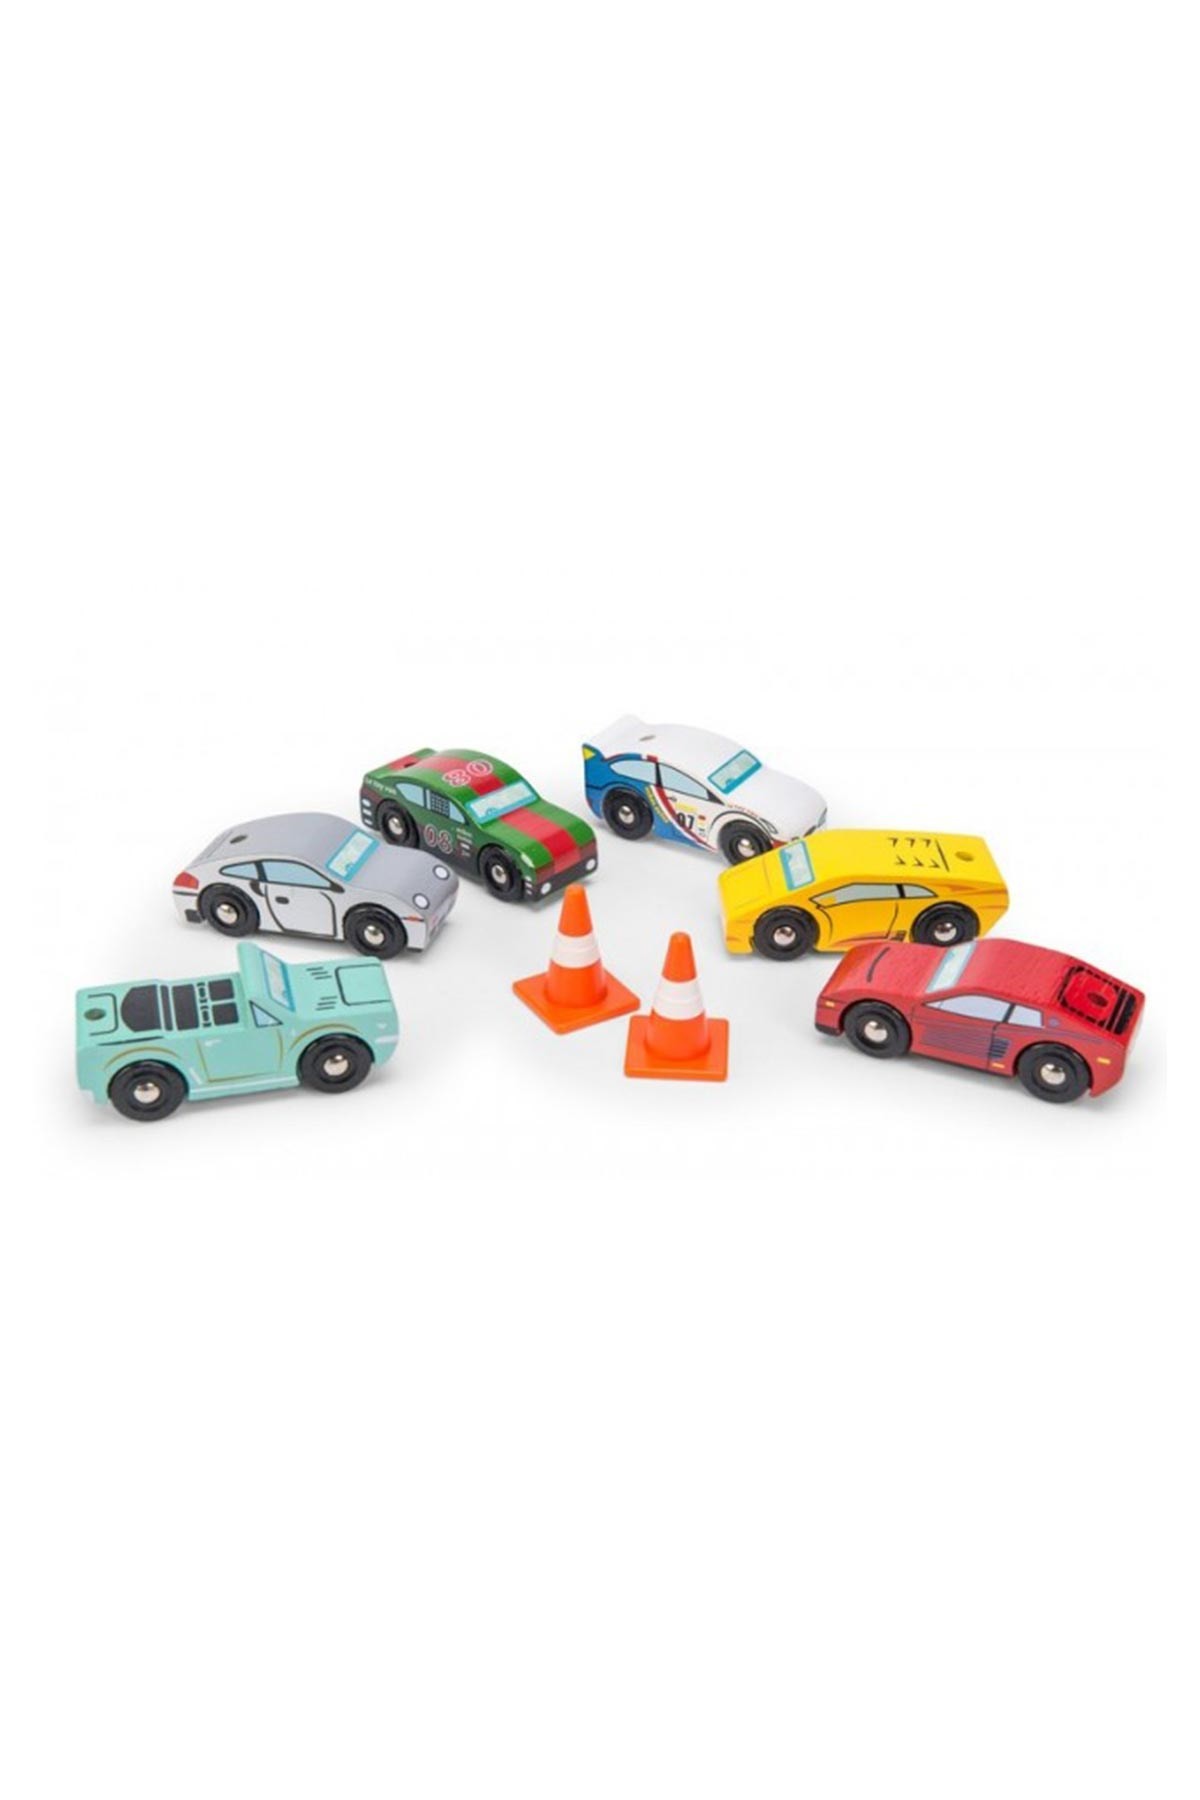 Le Toy Van Montecarlo Spor Arabalar